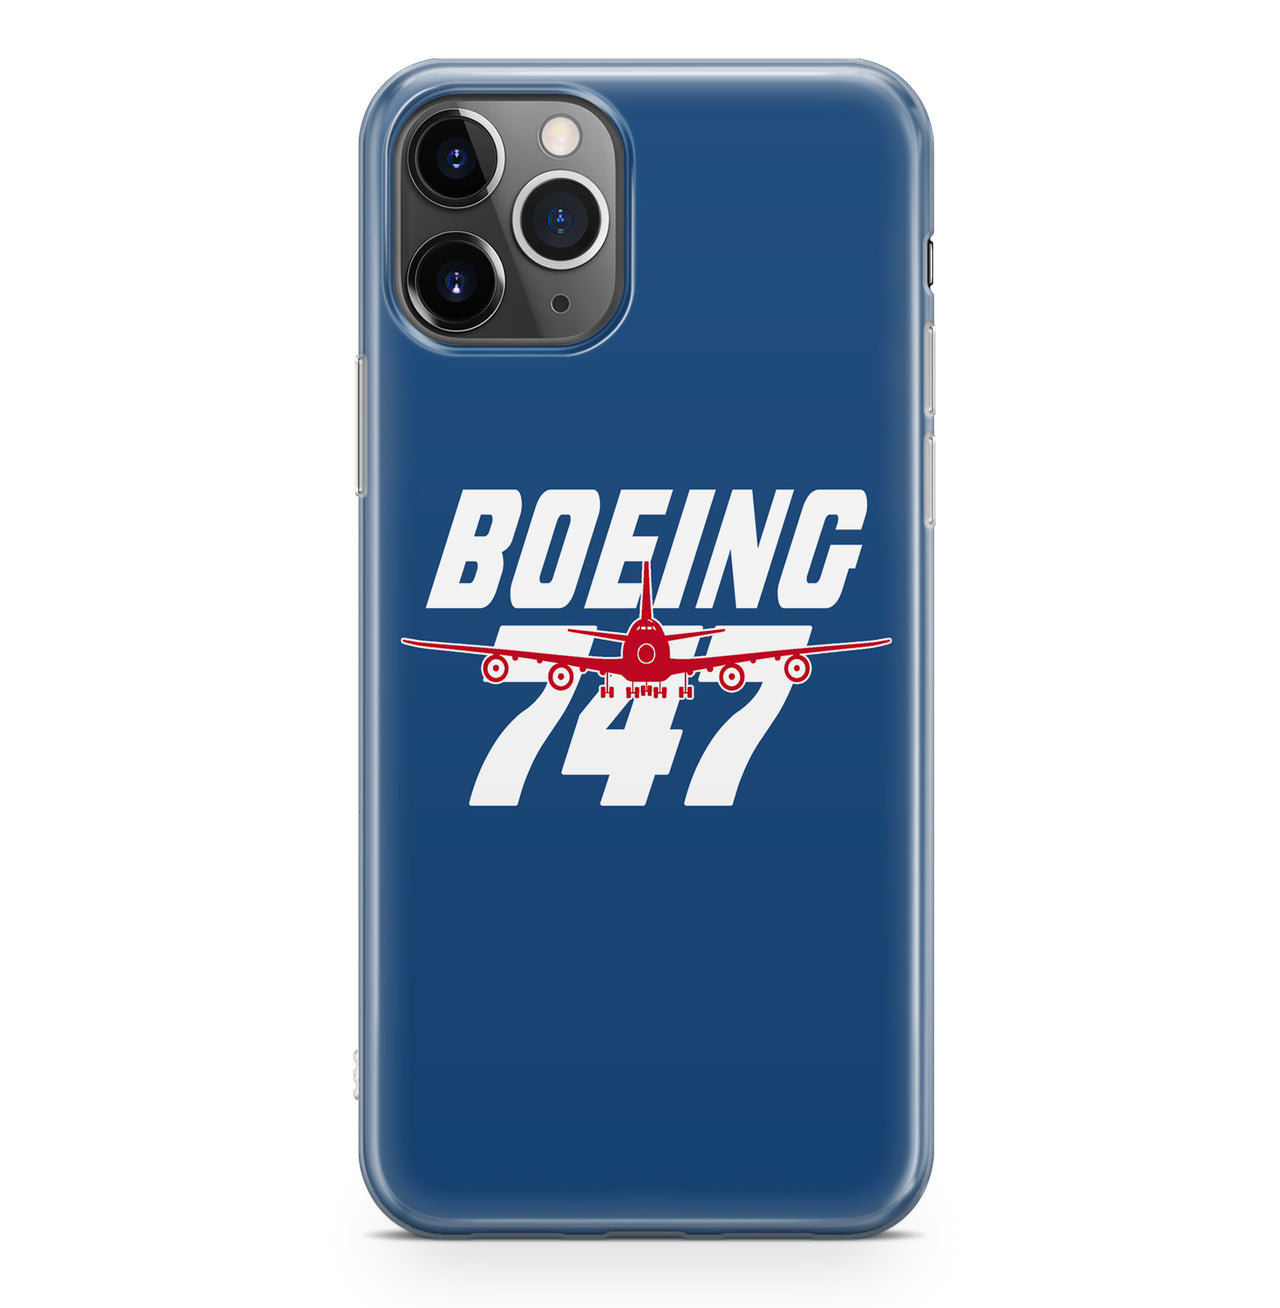 Amazing Boeing 747 Designed iPhone Cases